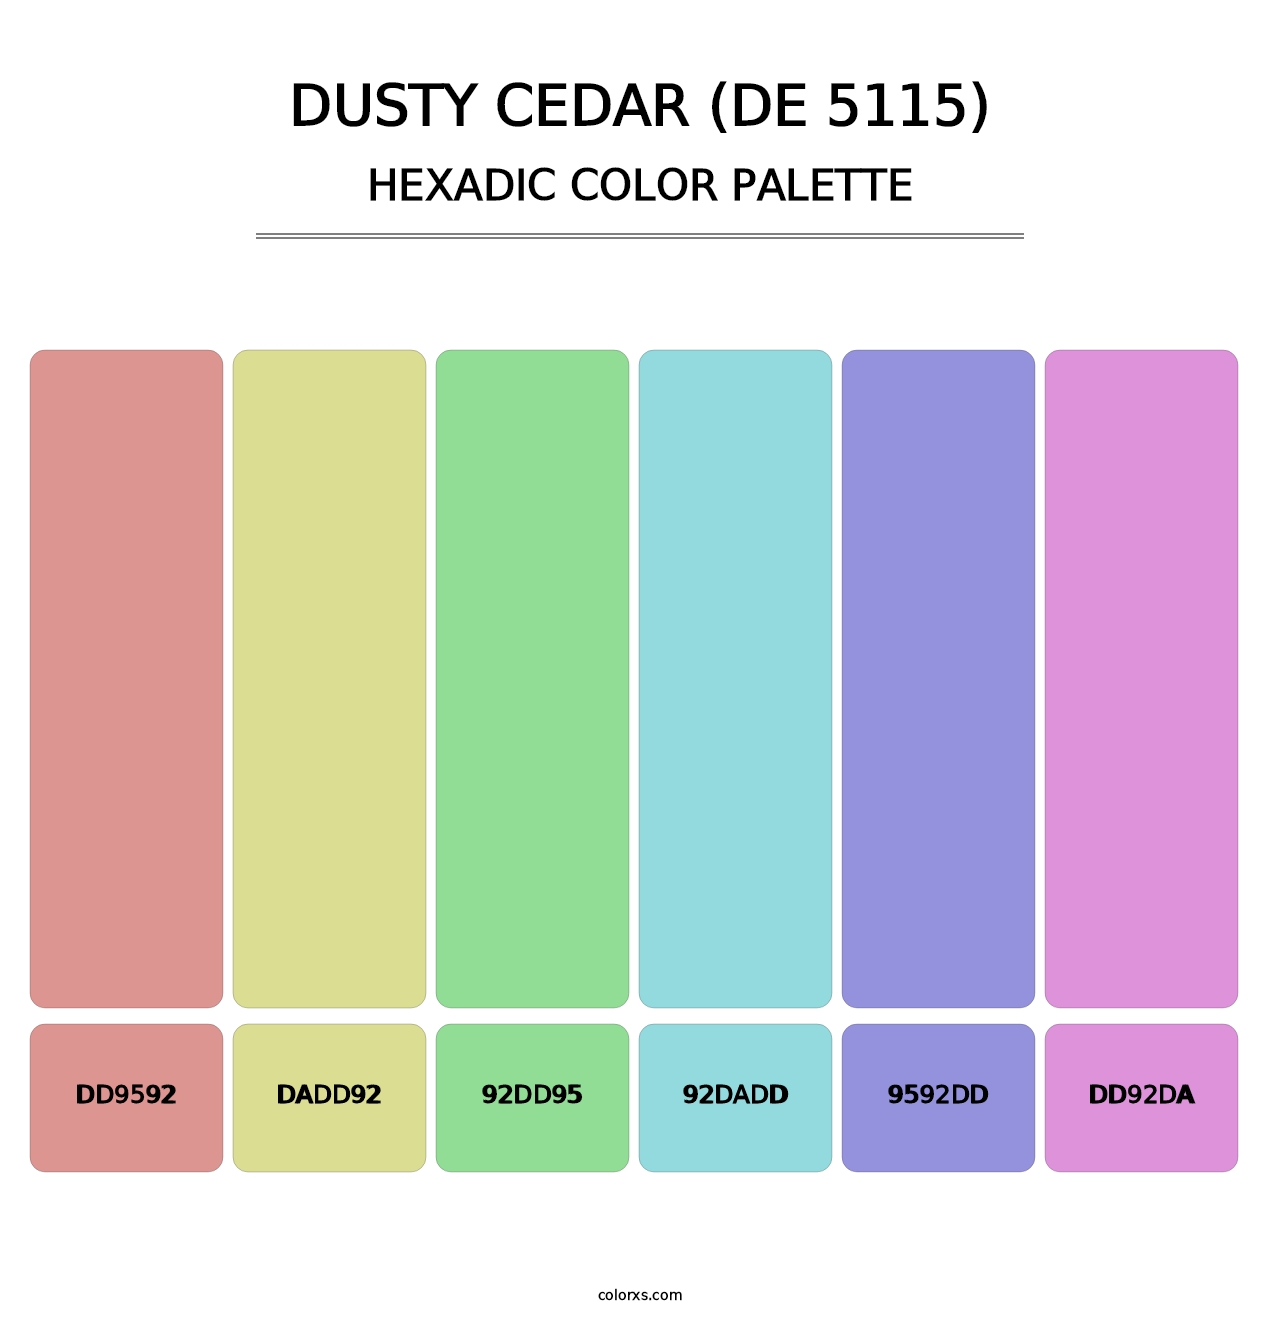 Dusty Cedar (DE 5115) - Hexadic Color Palette